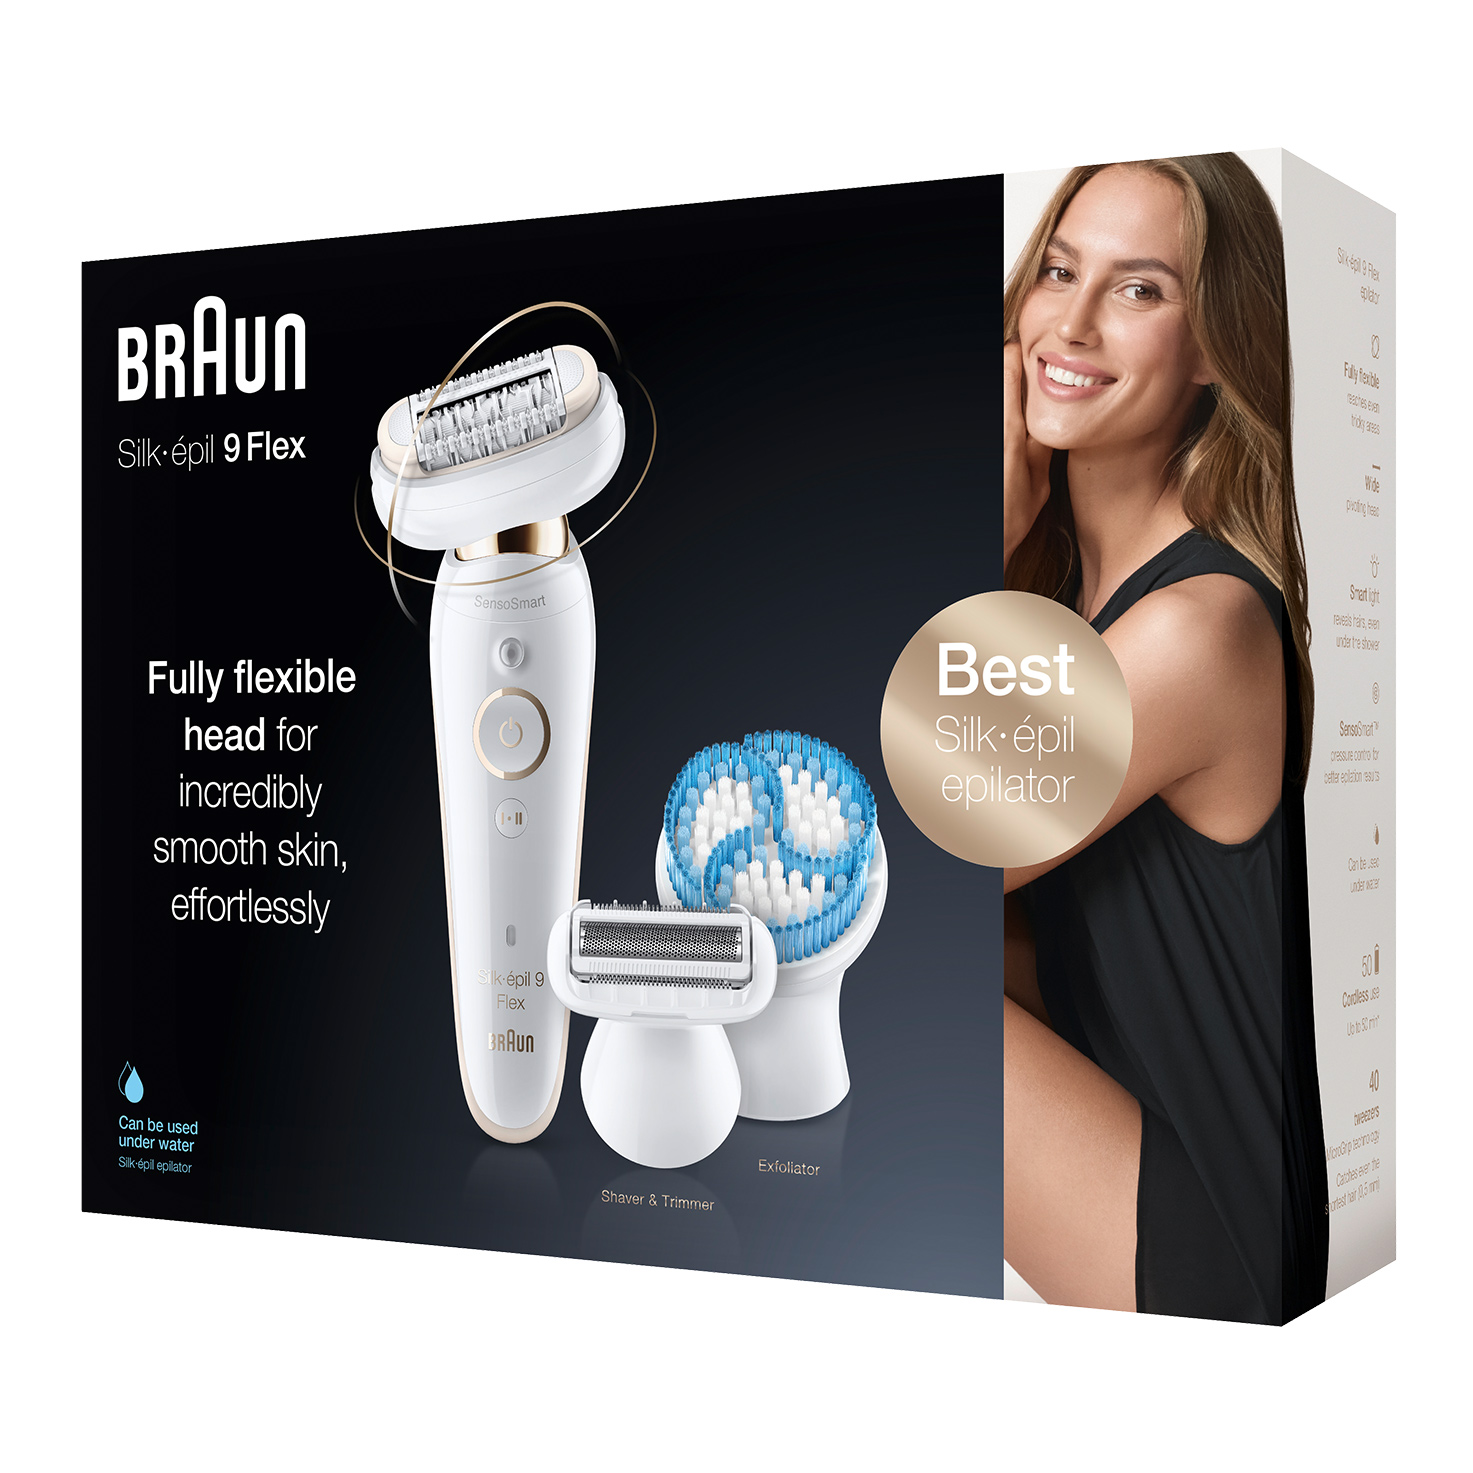 Braun Silk-épil 9 Flex 9300 Set De Belleza, Depiladora Mujer Eléctrica  Inalámbrica, Cabezal Flexible Para Depilar Fácil, Antideslizante,  Blanco/Dorado